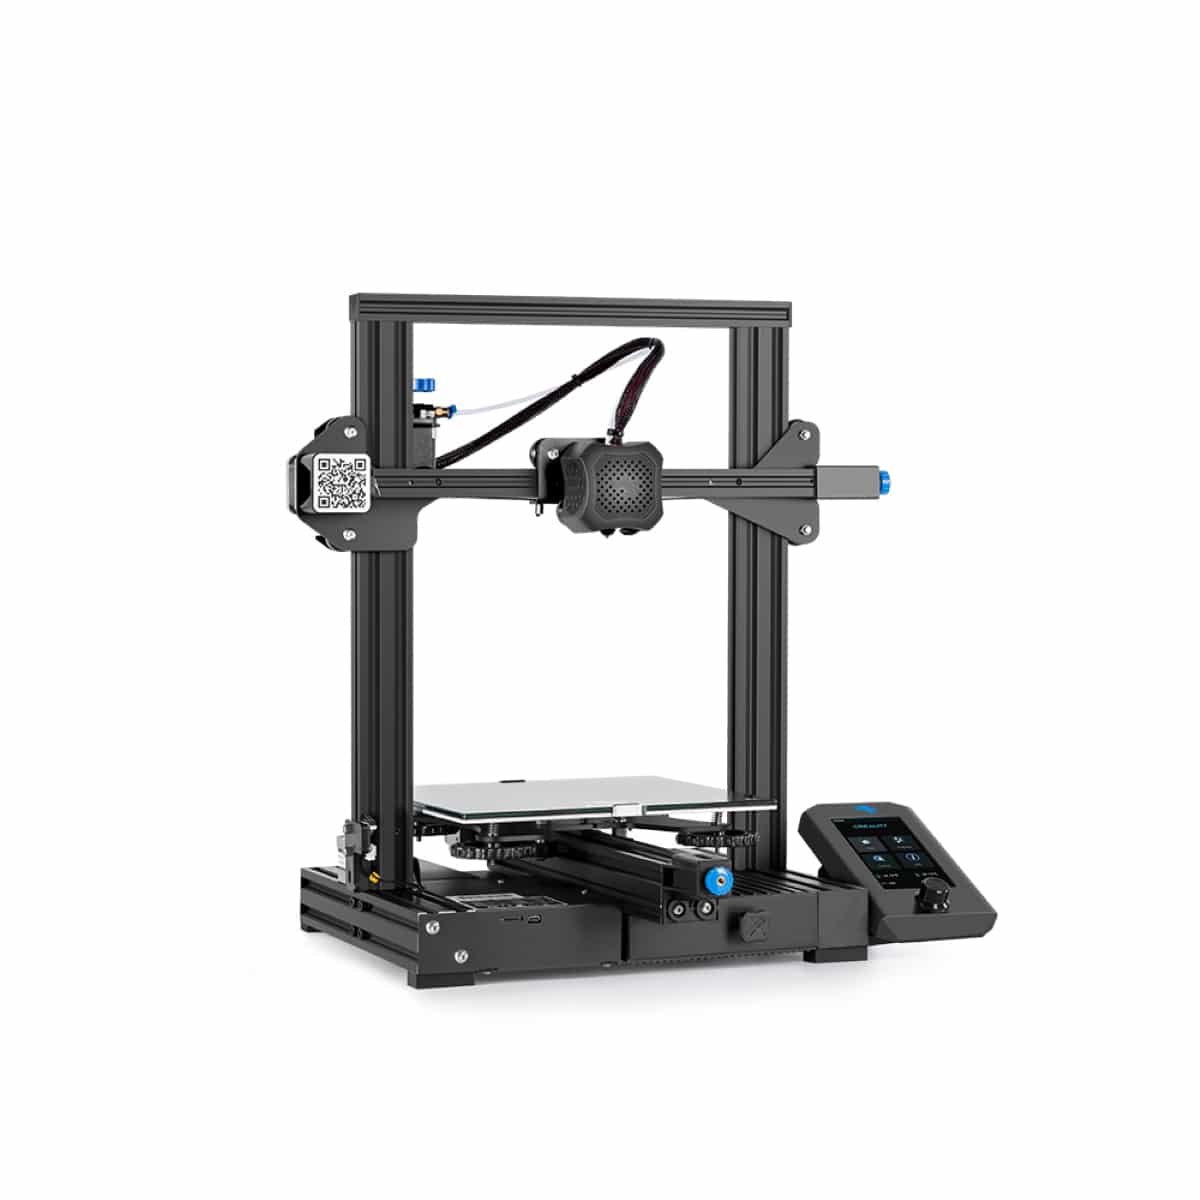 Køb Creality 3D Ender 3 v2 3d printer - Pris 2299.00 kr.